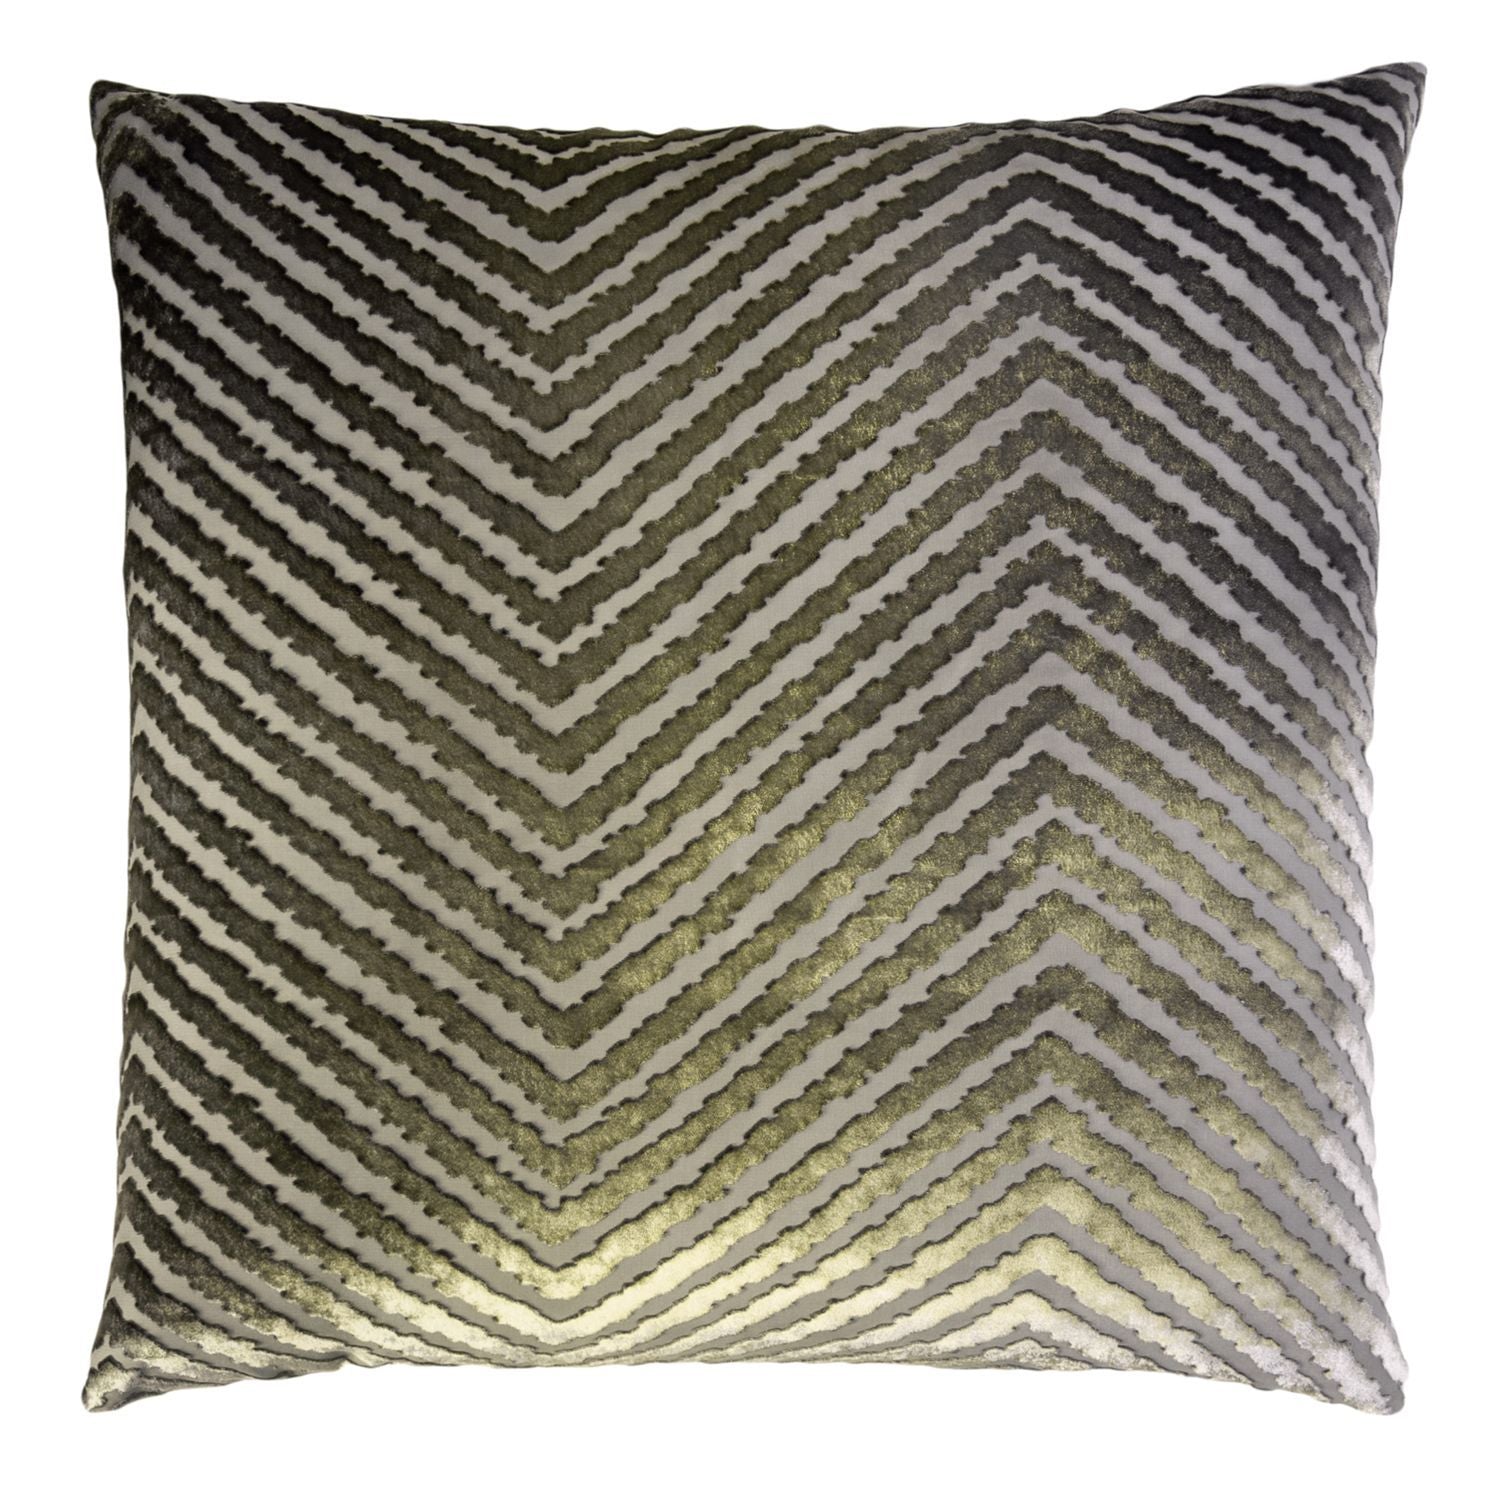 Oregano Chevron Decorative Pillow by Kevin O'Brien Studio  - Fig Linens